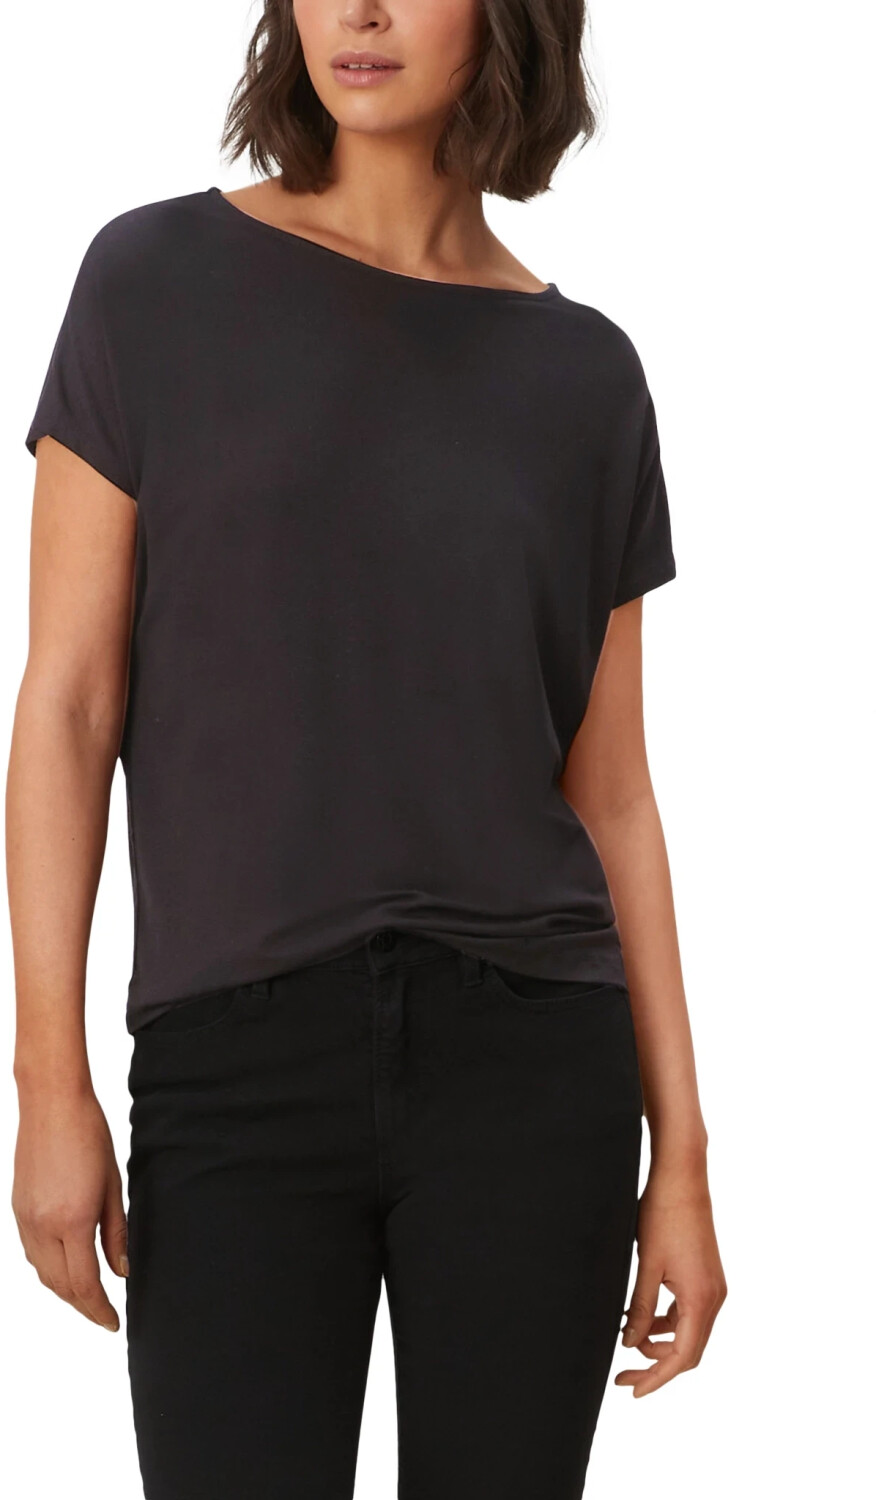 S.Oliver Ärmelloses T-Shirt (2112030.9999) schwarz ab 11,94 € |  Preisvergleich bei